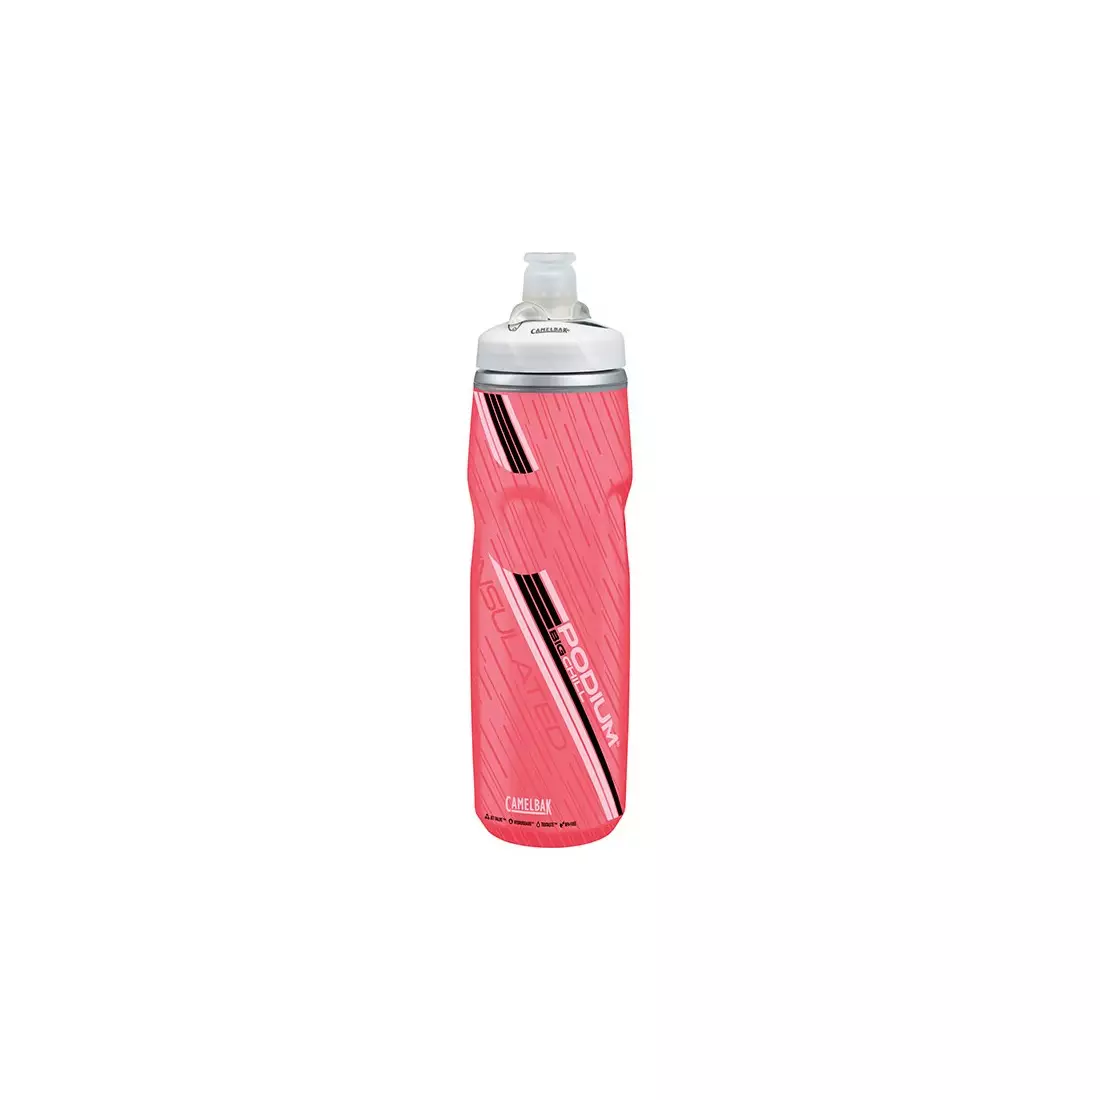 Camelbak SS17 Podium Big Chill sticla termică pentru bicicletă 25 oz/ 750 ml Power Pink